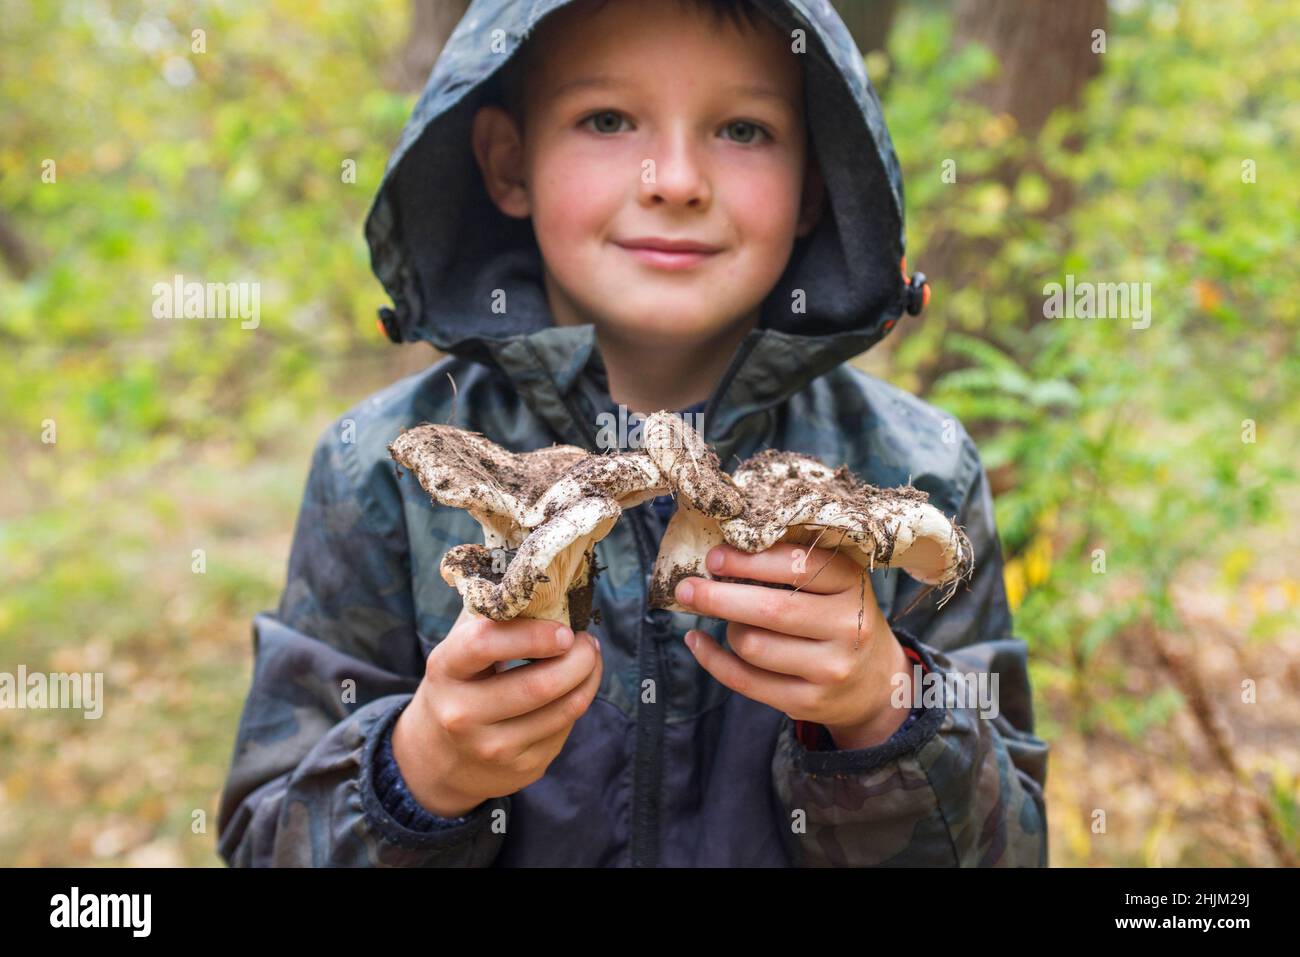 Il bambino tiene i funghi nelle sue mani. Alla ricerca di funghi nella foresta. Il bambino tiene nelle sue mani grandi funghi nella foresta in autunno. Foresta m Foto Stock